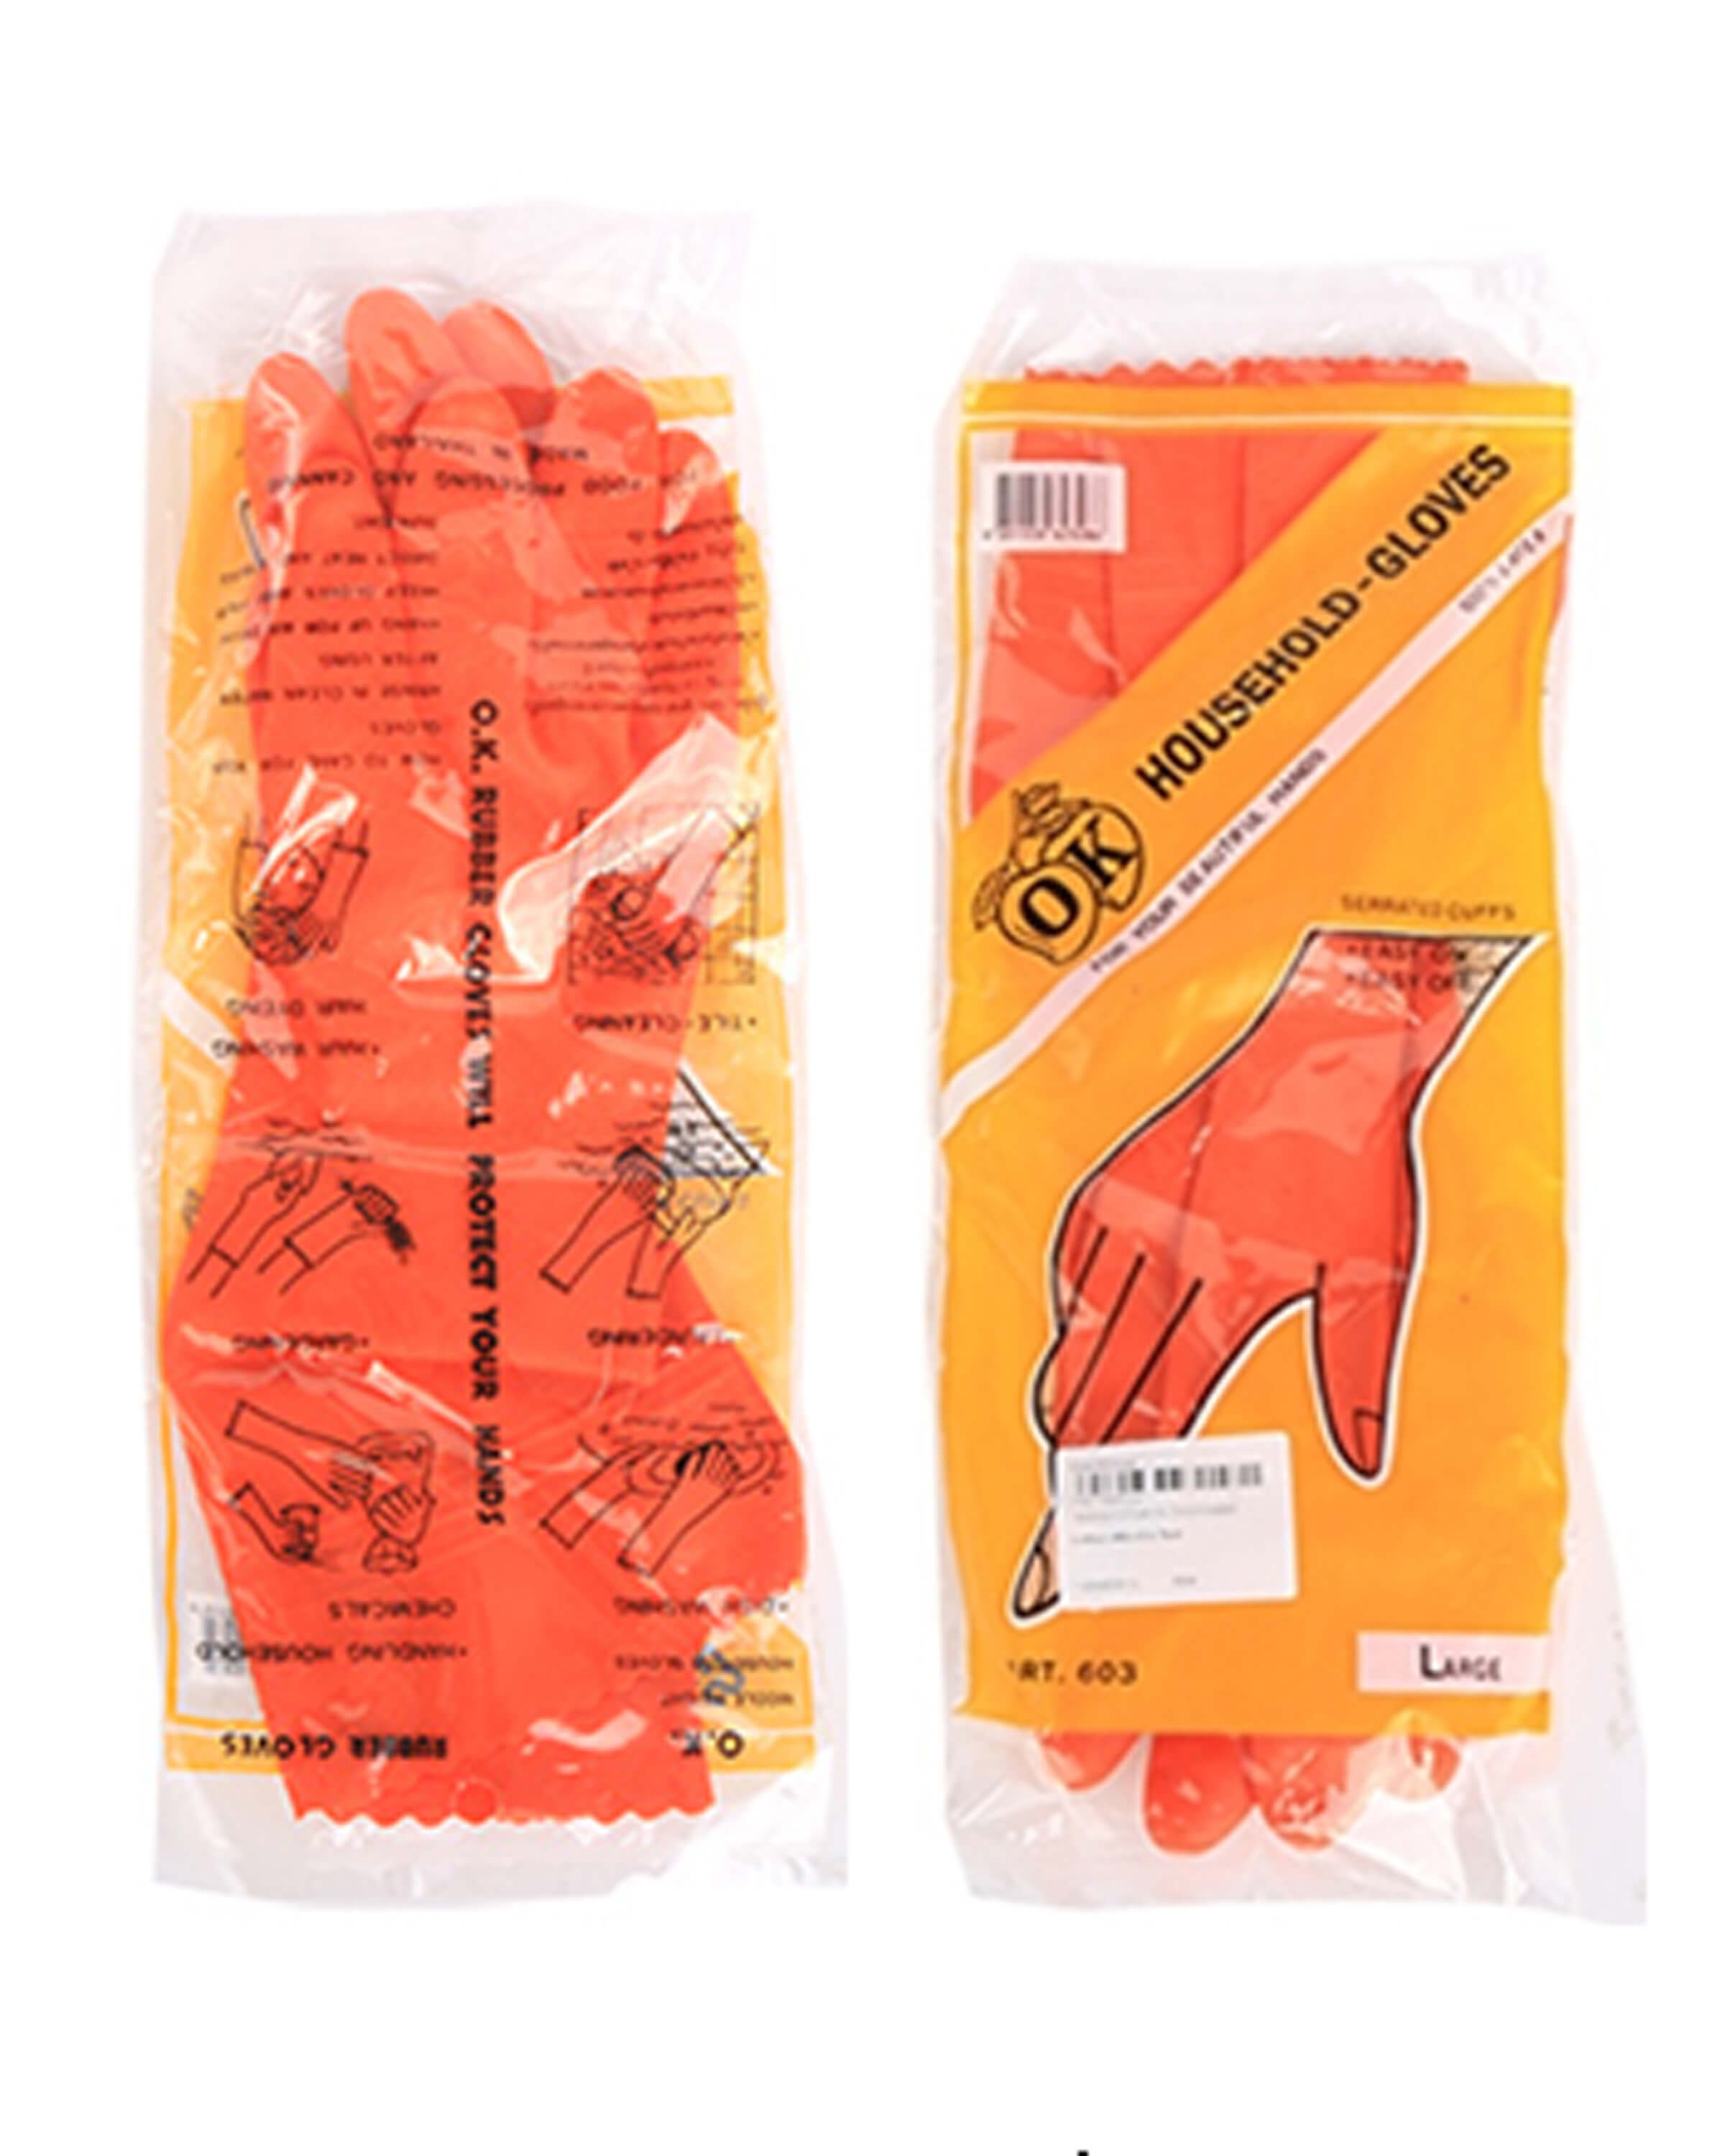 ถุงมือยาง OK สีส้ม (ไซน์ใหญ่)